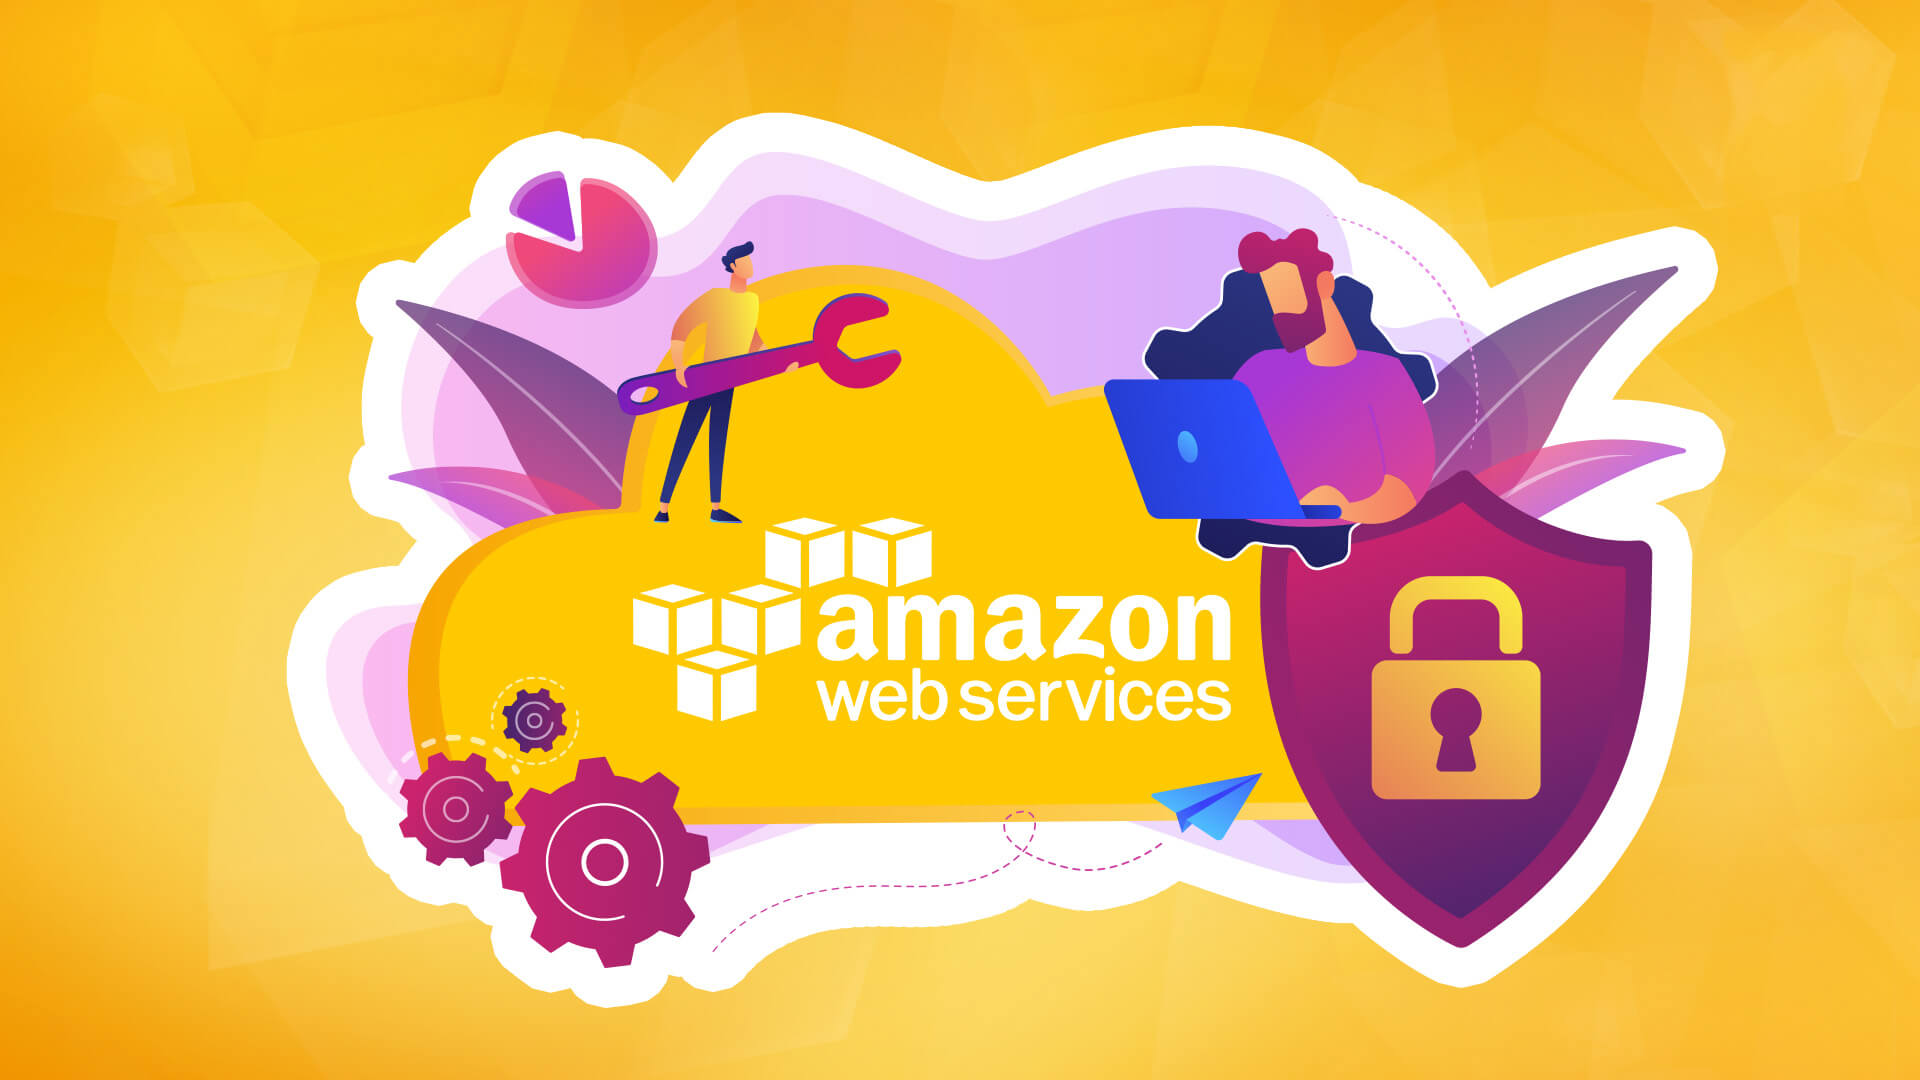 bezpieczeństwo amazon web services